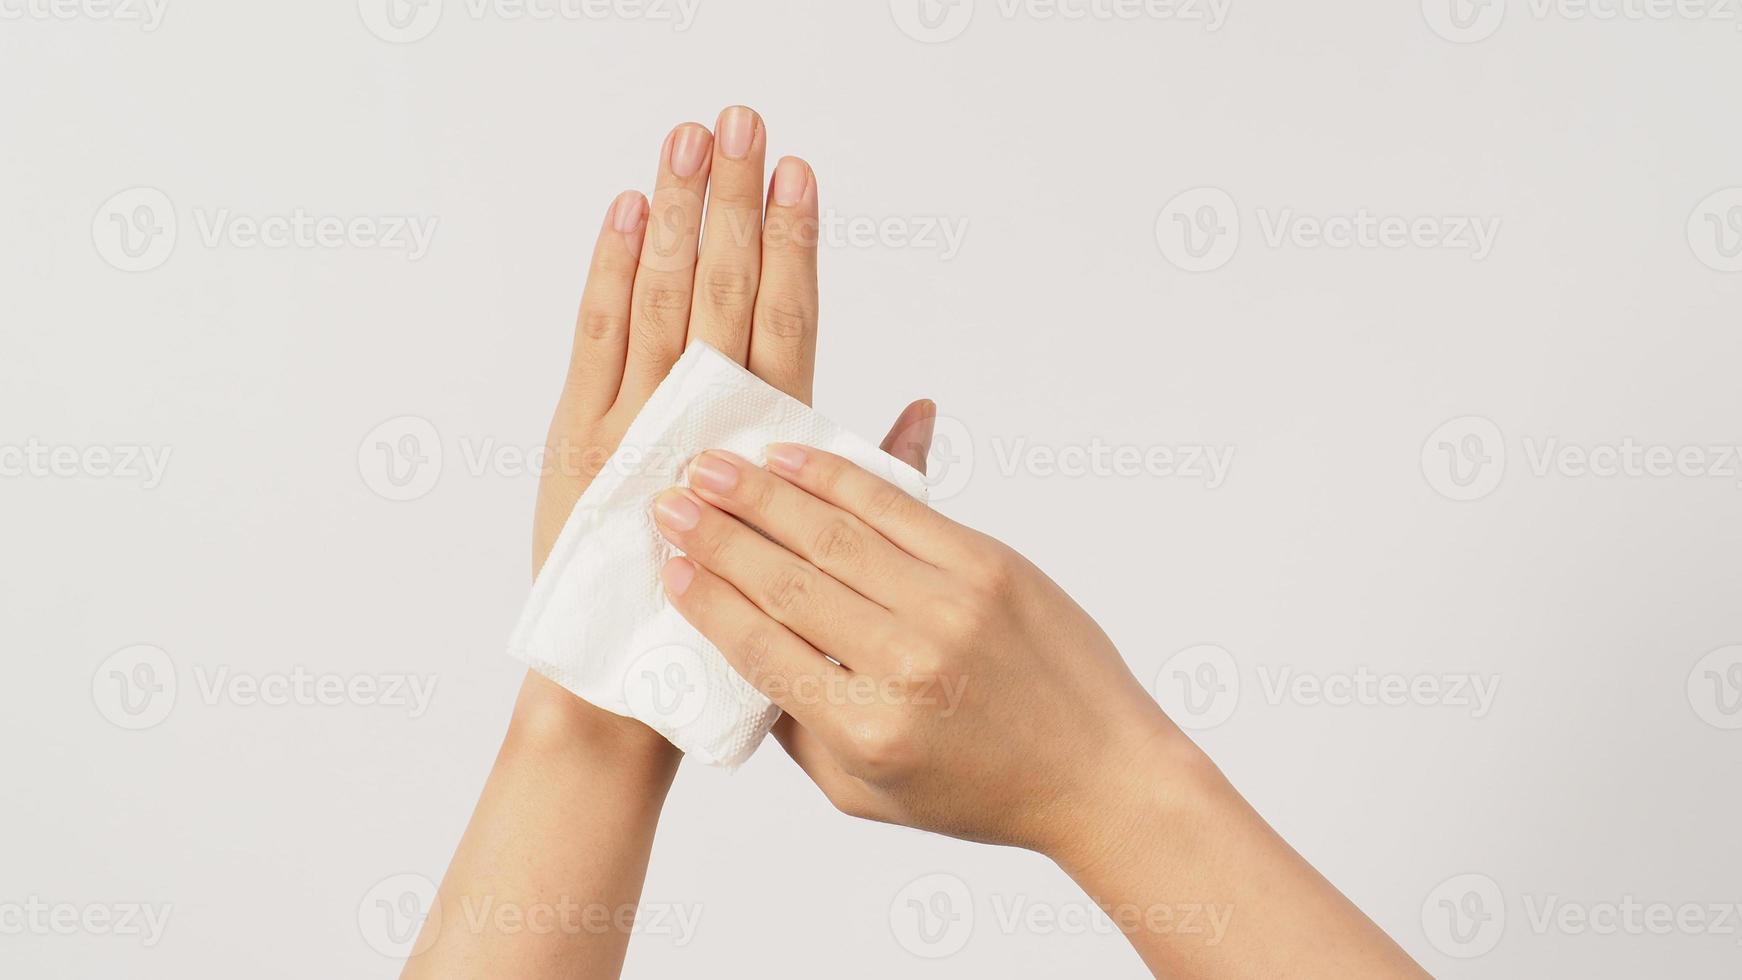 la mano sostiene papel tisú y toallitas sobre fondo blanco. foto